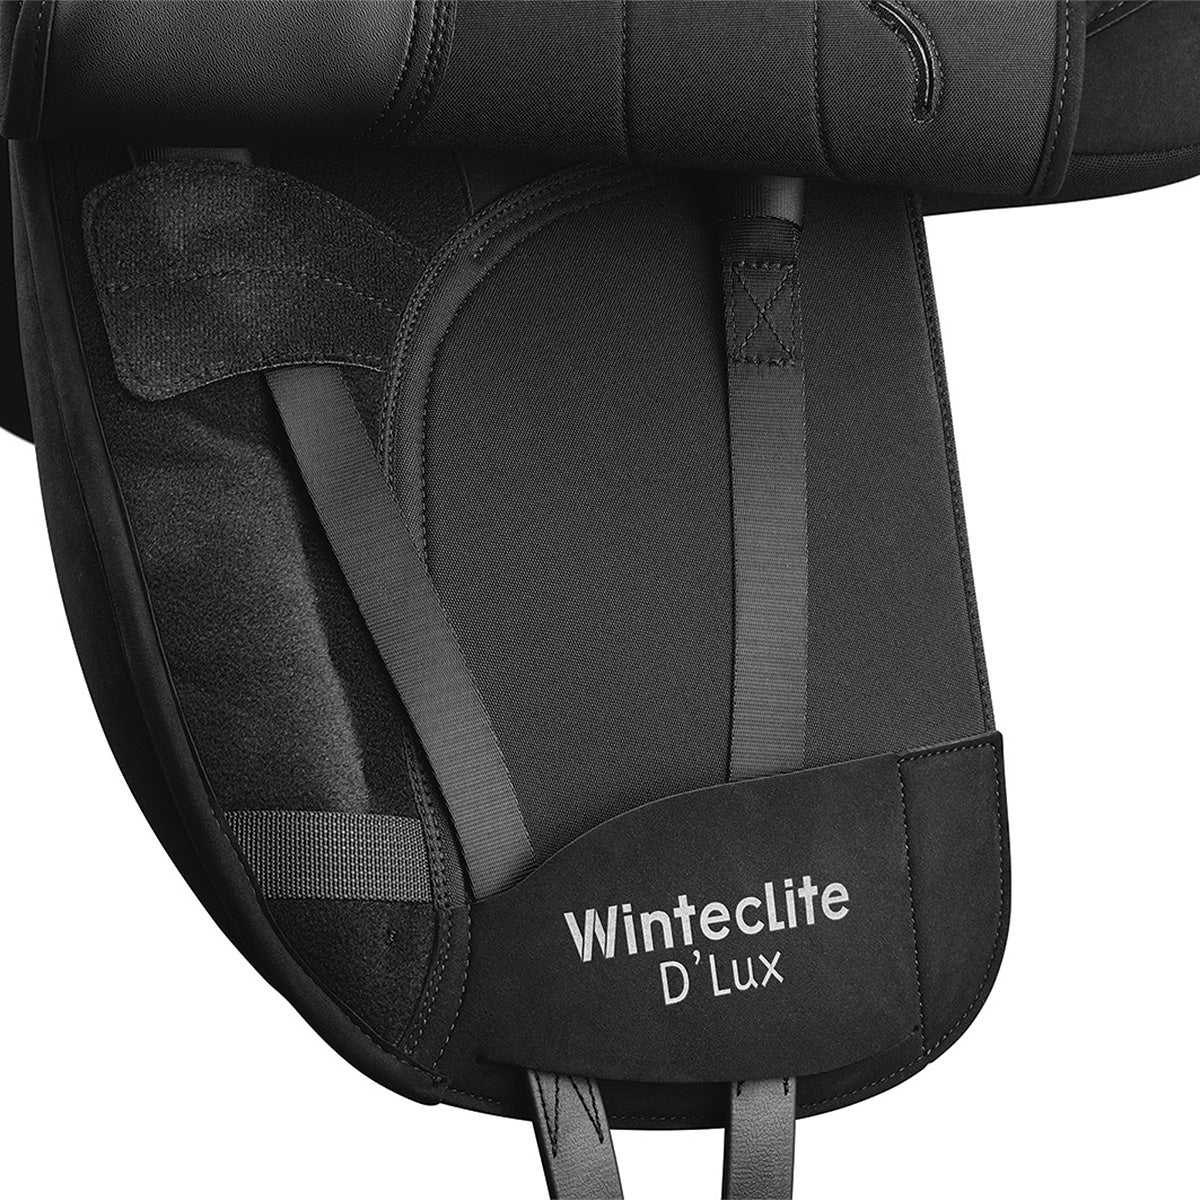 WintecLite "D'Lux" Dressage Saddle